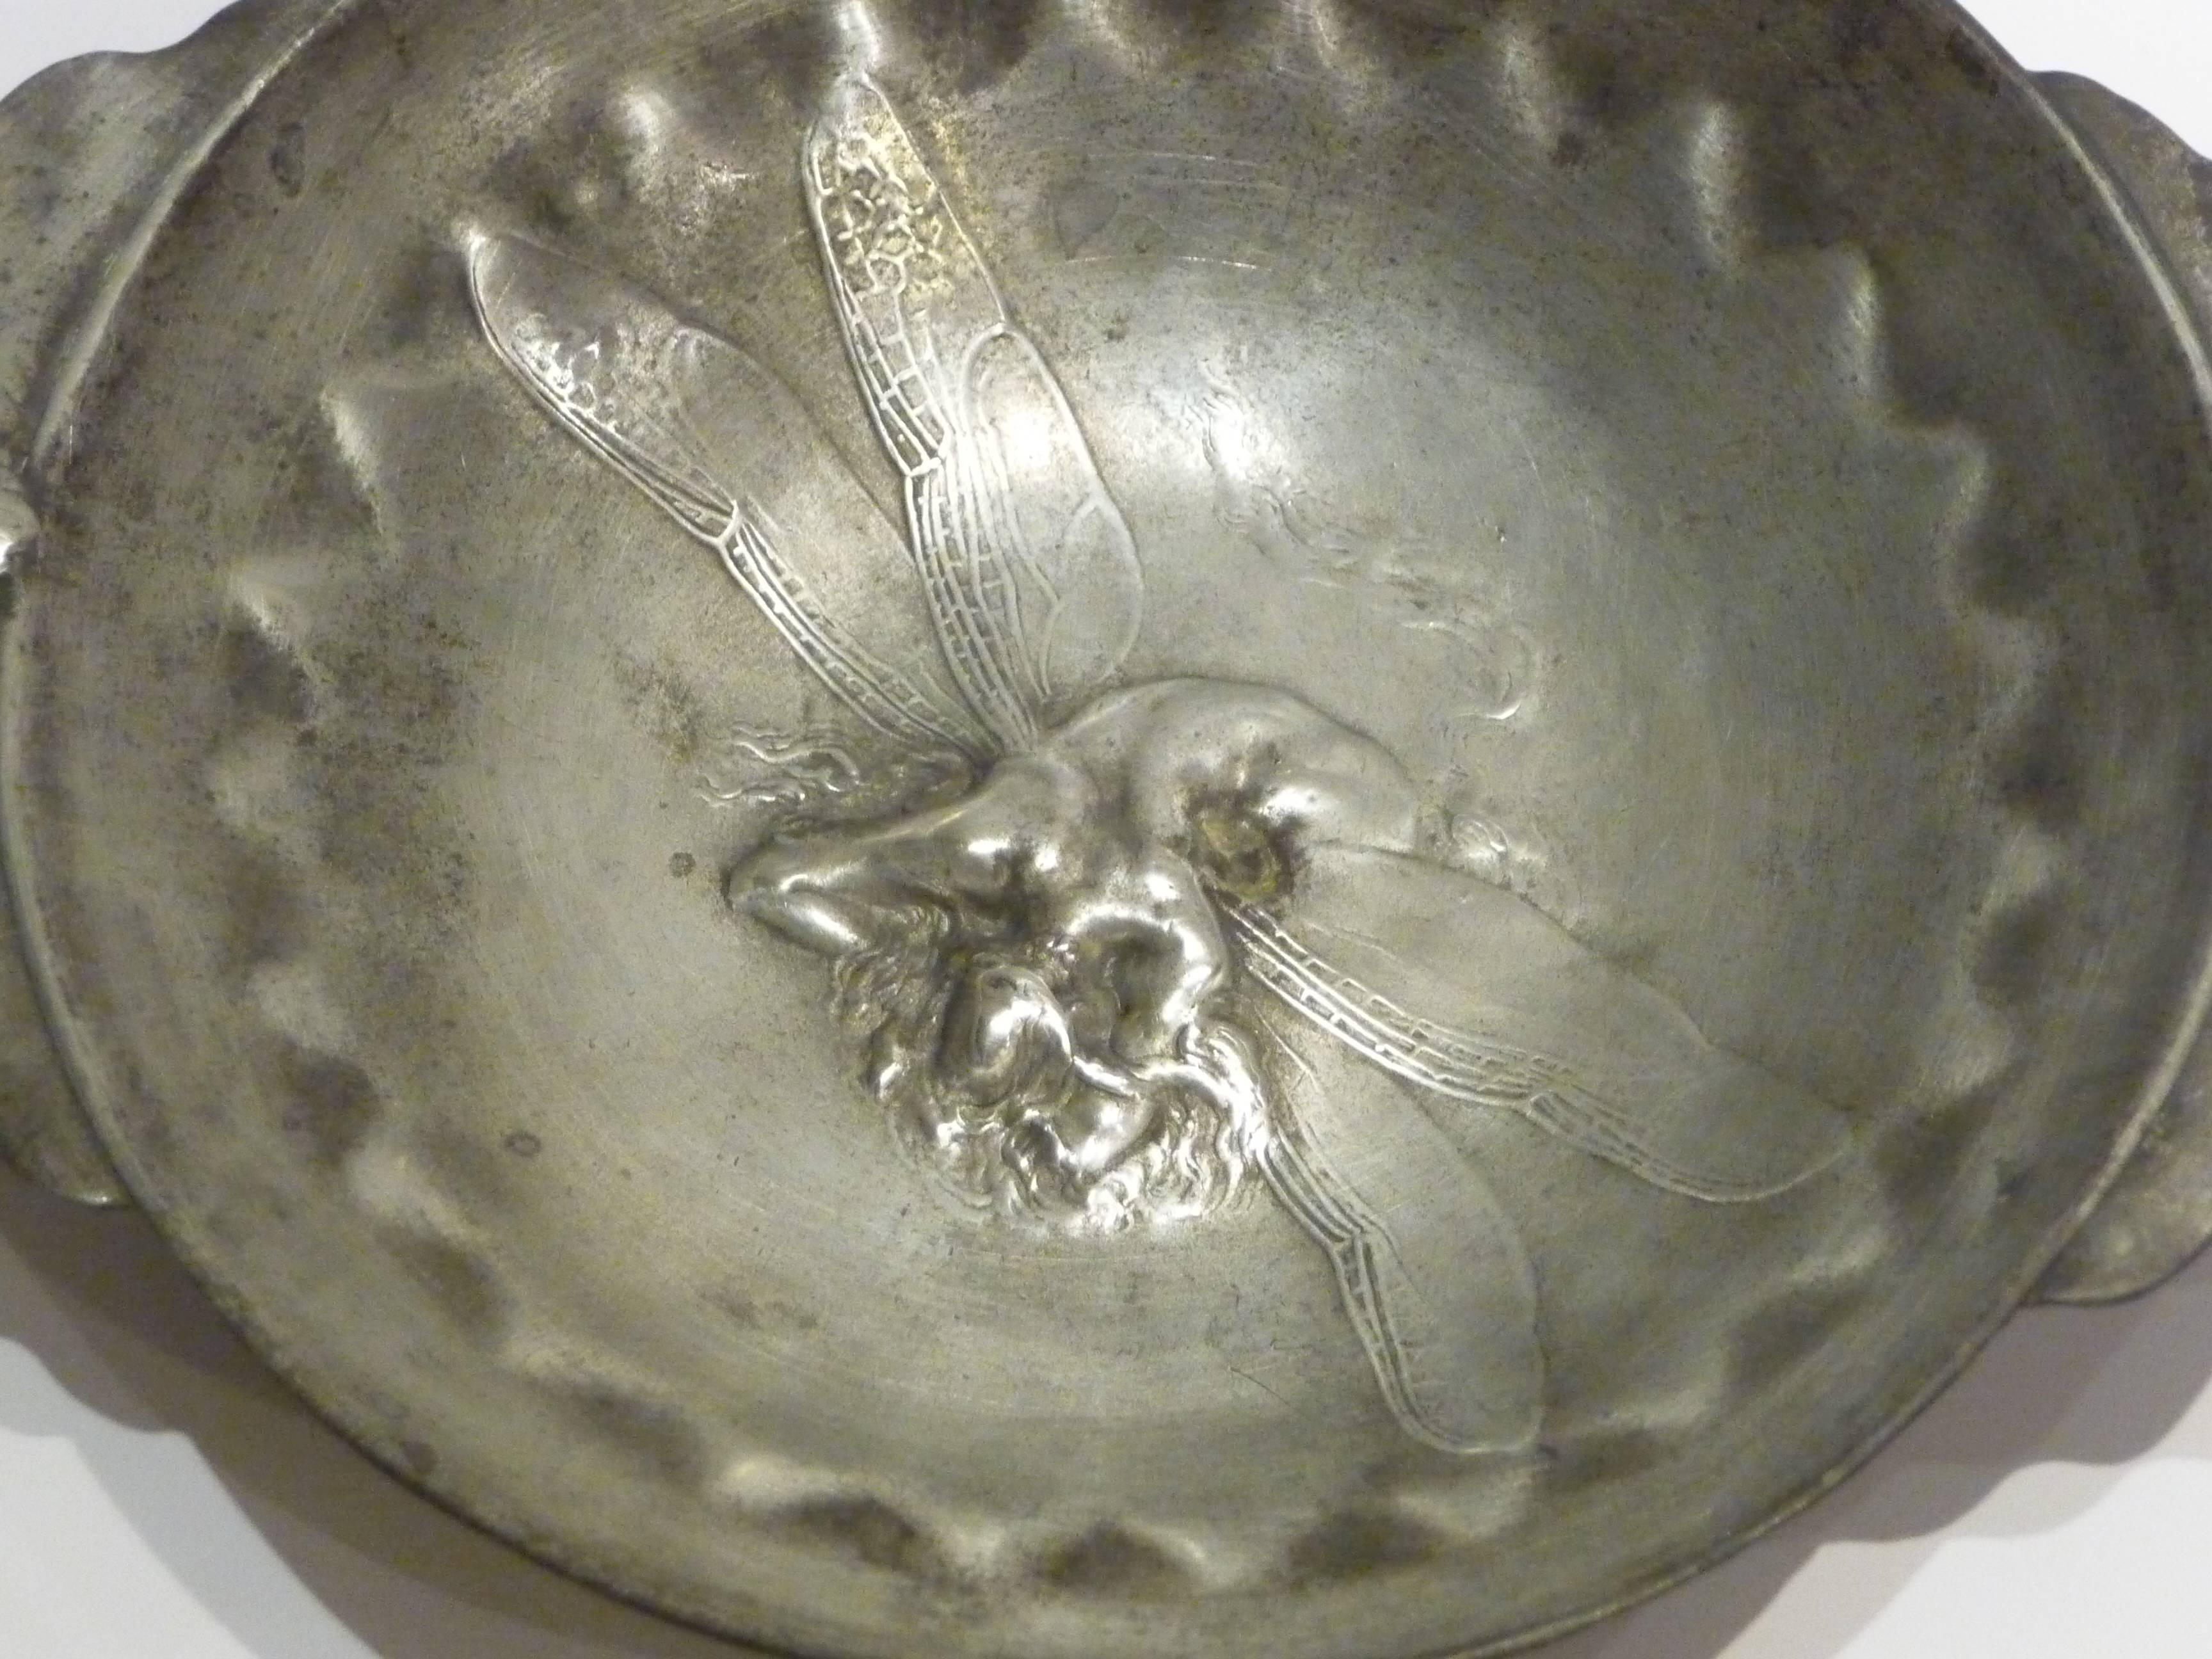 Jules Desbois.
Adrien-Aurélien Hébrard, foundry.
An Art Nouveau pewter bowl decorated with a fantastic dragonfly.
Signed.
Literature: L'Art Décoratif, July 1910, ill. p. 23.
 